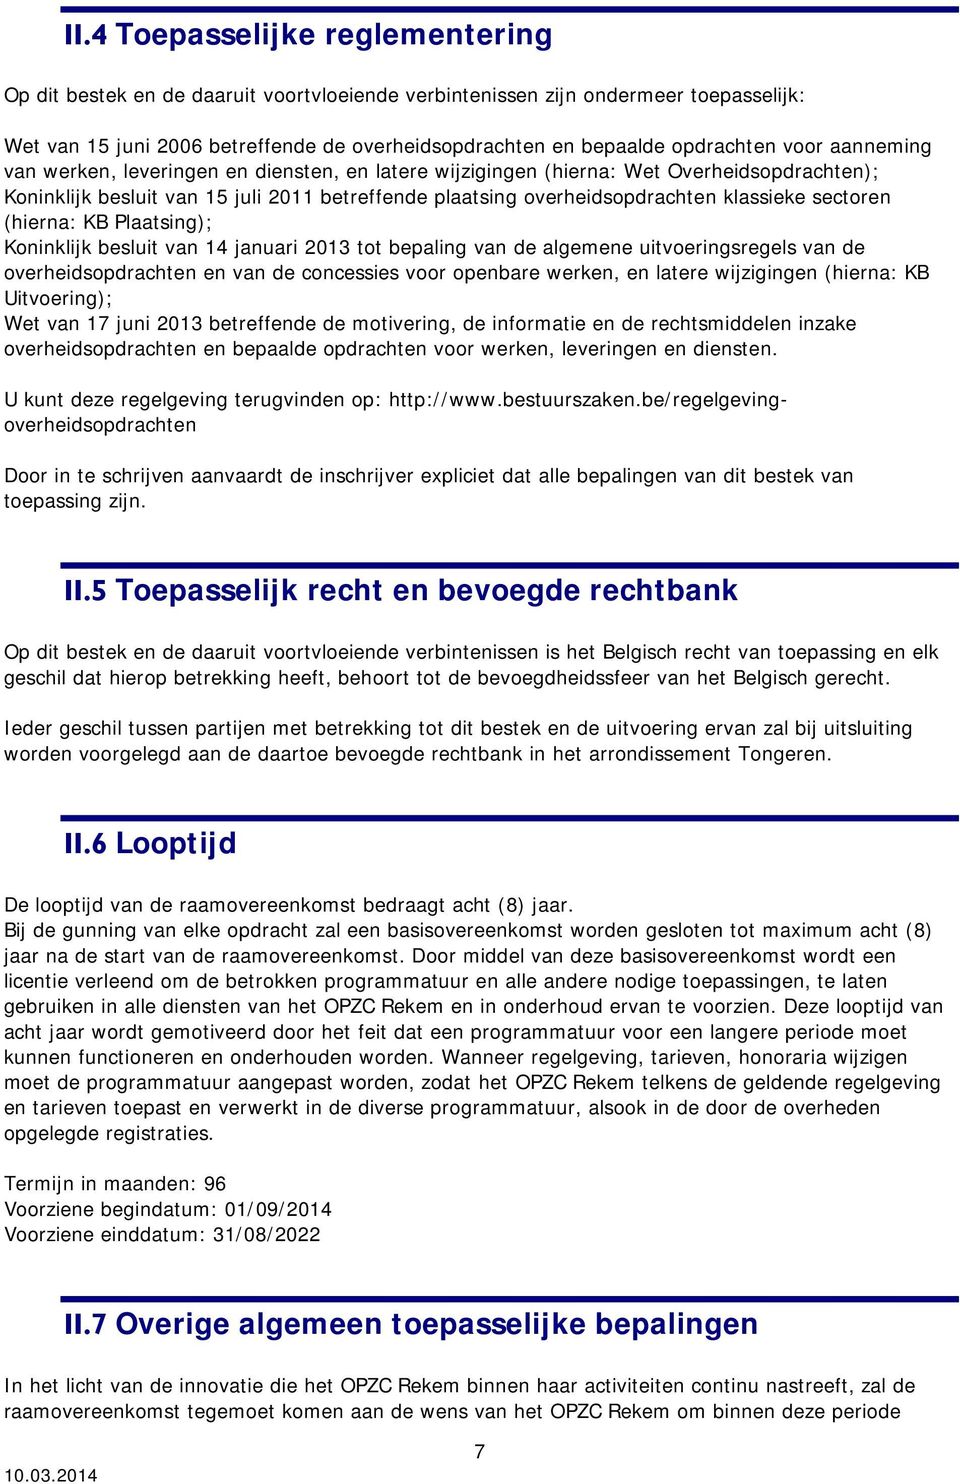 sectoren (hierna: KB Plaatsing); Koninklijk besluit van 14 januari 2013 tot bepaling van de algemene uitvoeringsregels van de overheidsopdrachten en van de concessies voor openbare werken, en latere